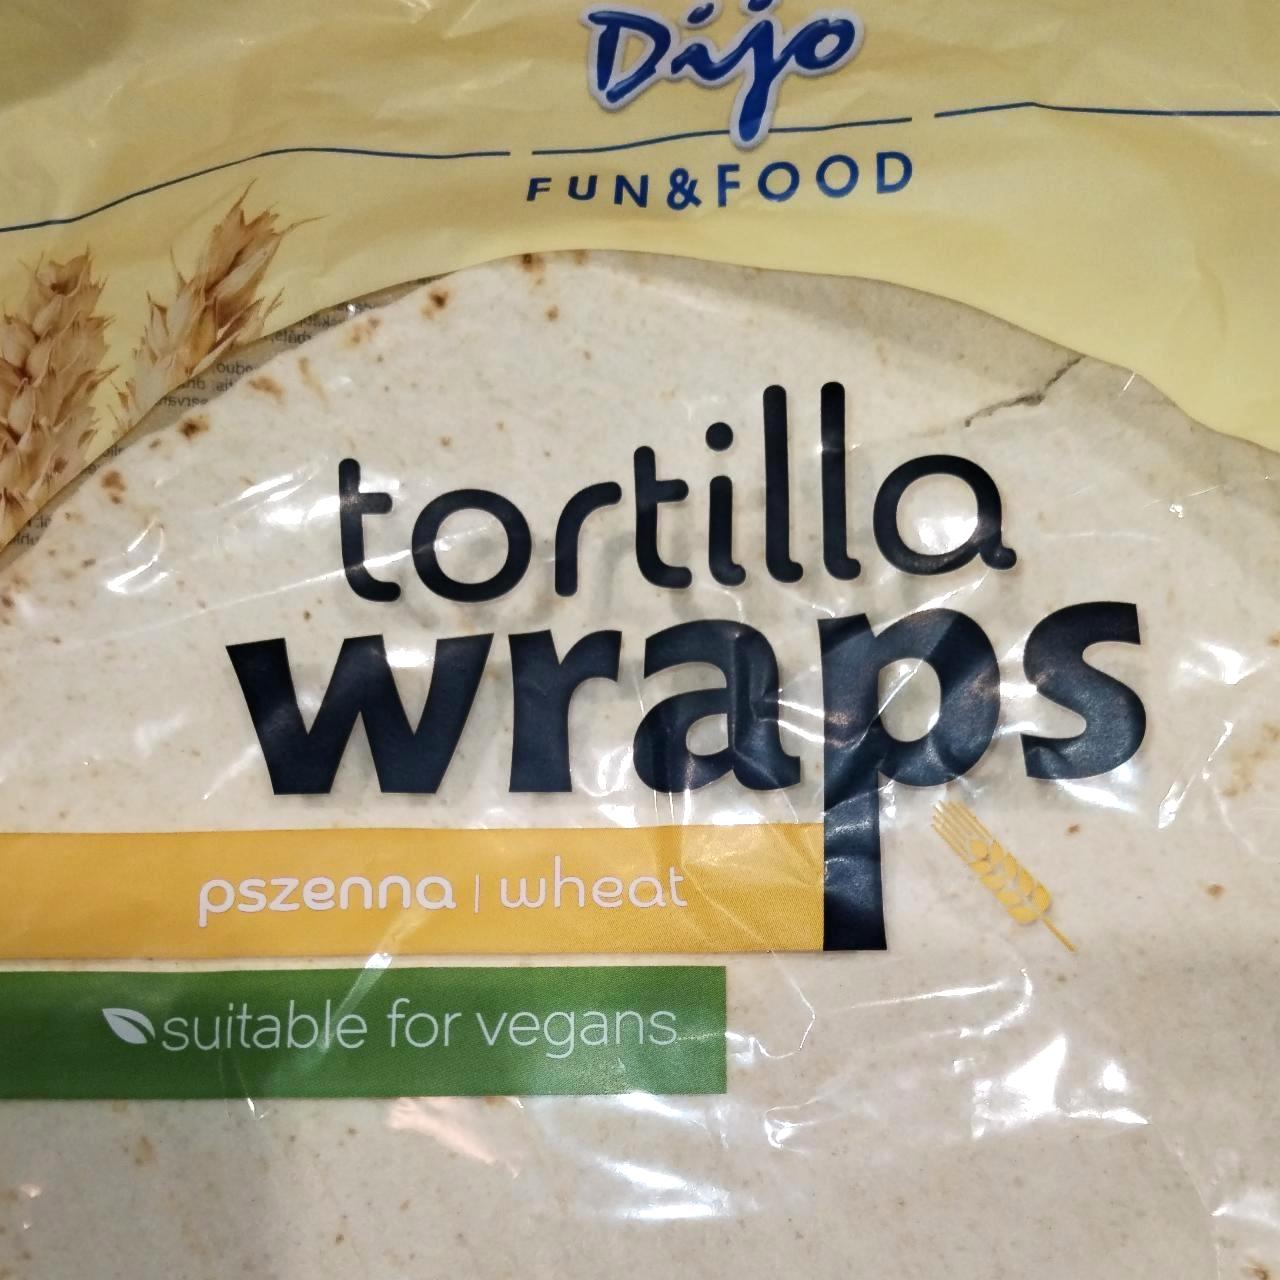 Képek - Tortilla wraps Dijo